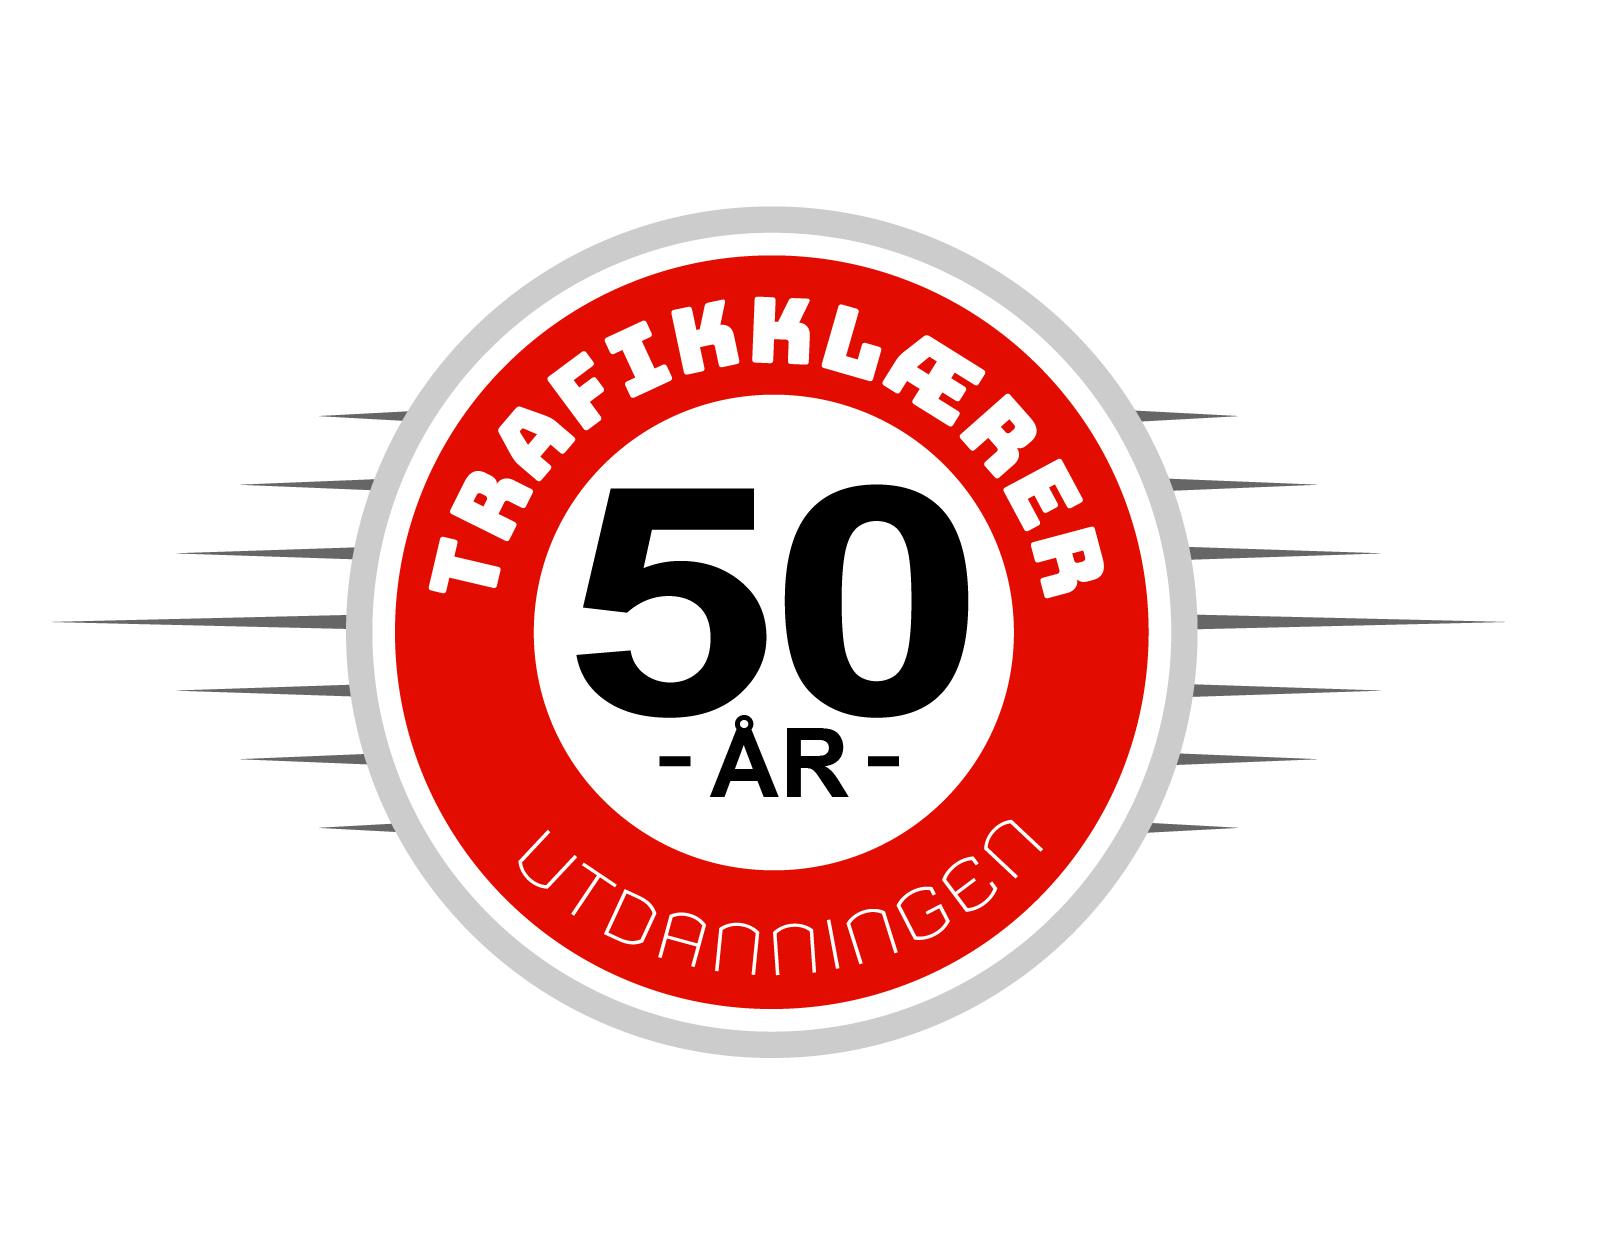 Logo for trafikklærerutdanningen som feirer 50 år.